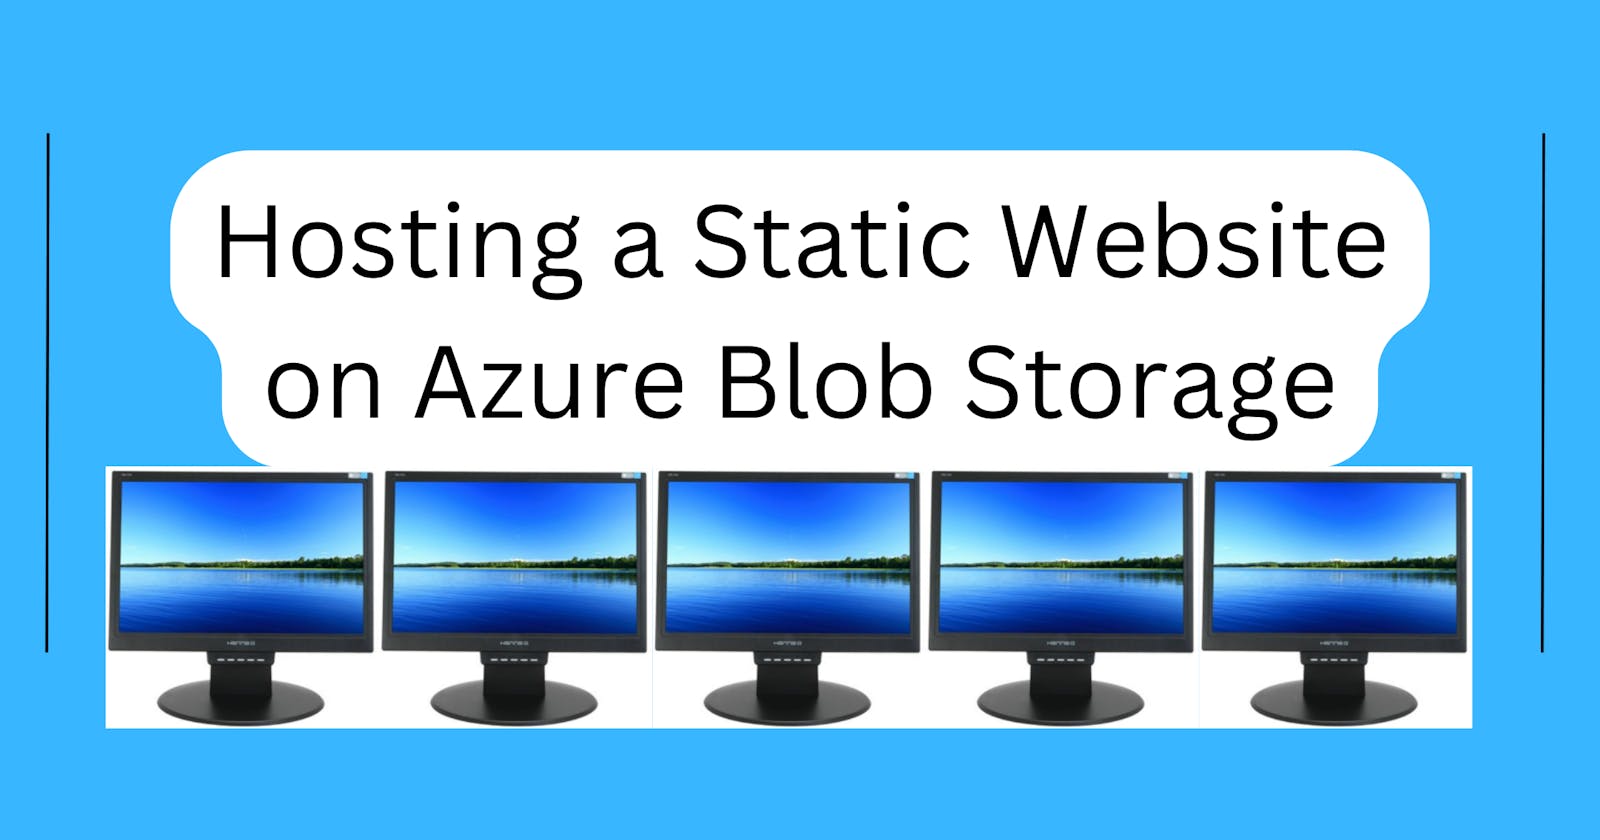 Hosting a Static Website on Azure Blob Storage